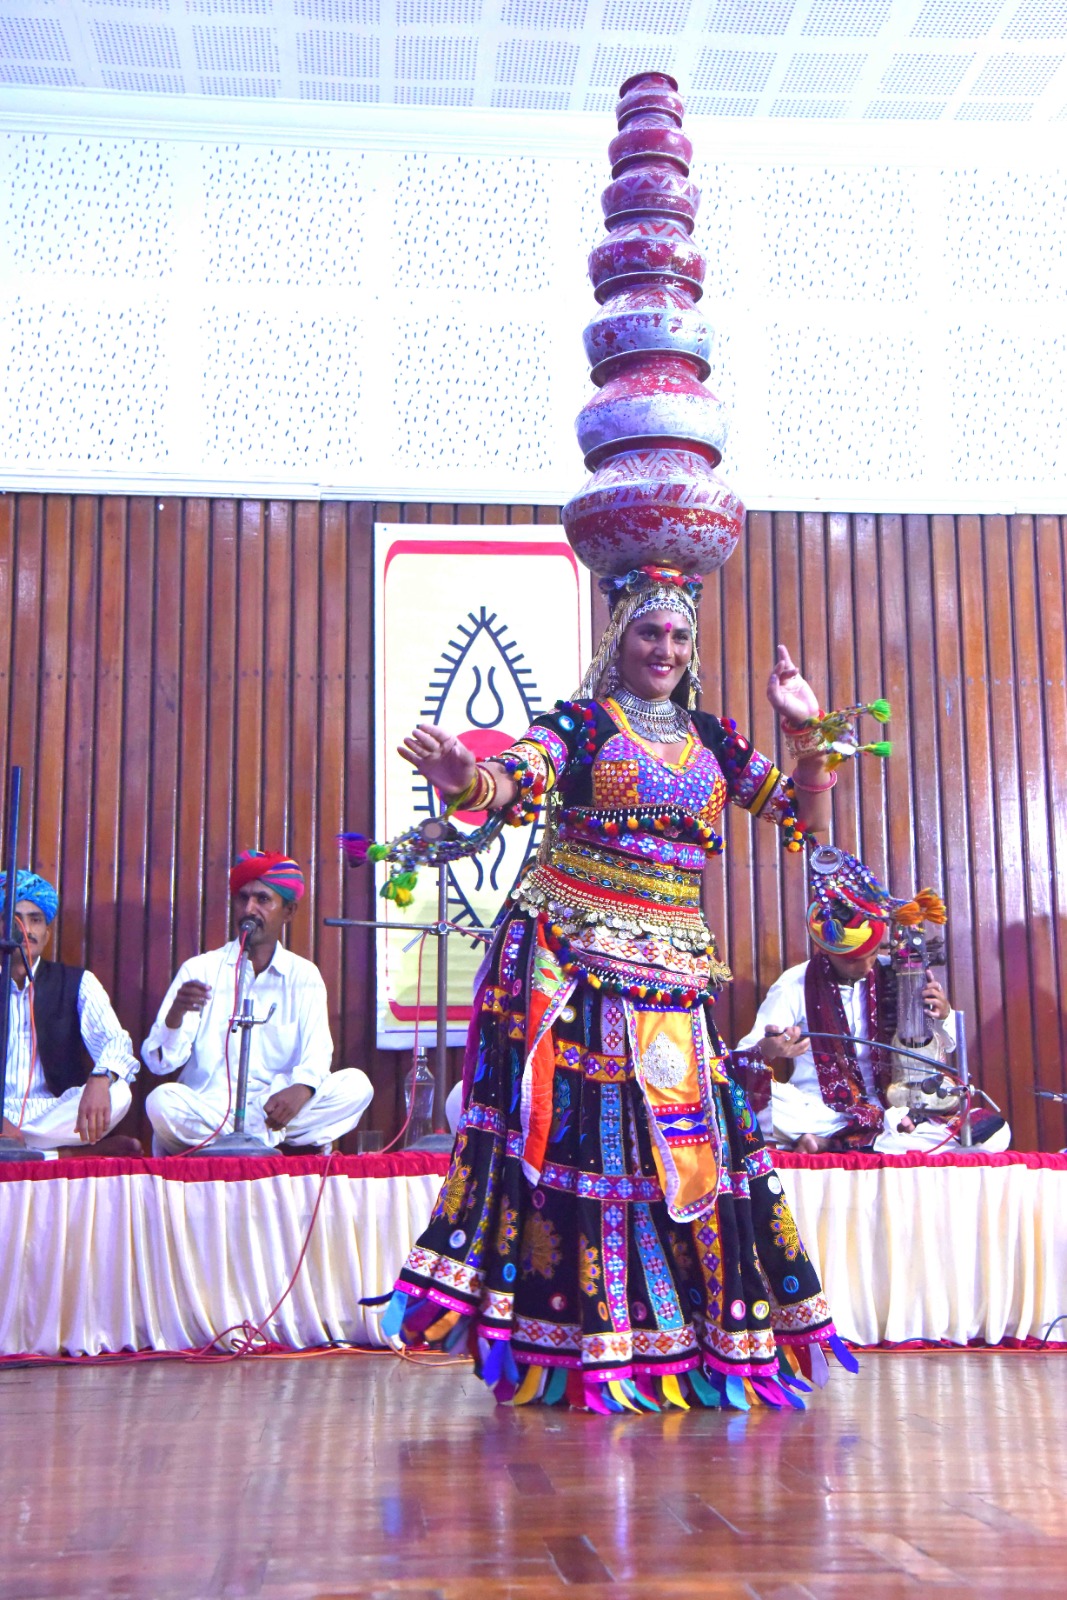 Rajasthani Folk Music & Dance by Shri Bungarkhan & Team, organised by CSIR-NIIST Staff Recreation Club and SPICMACAY 